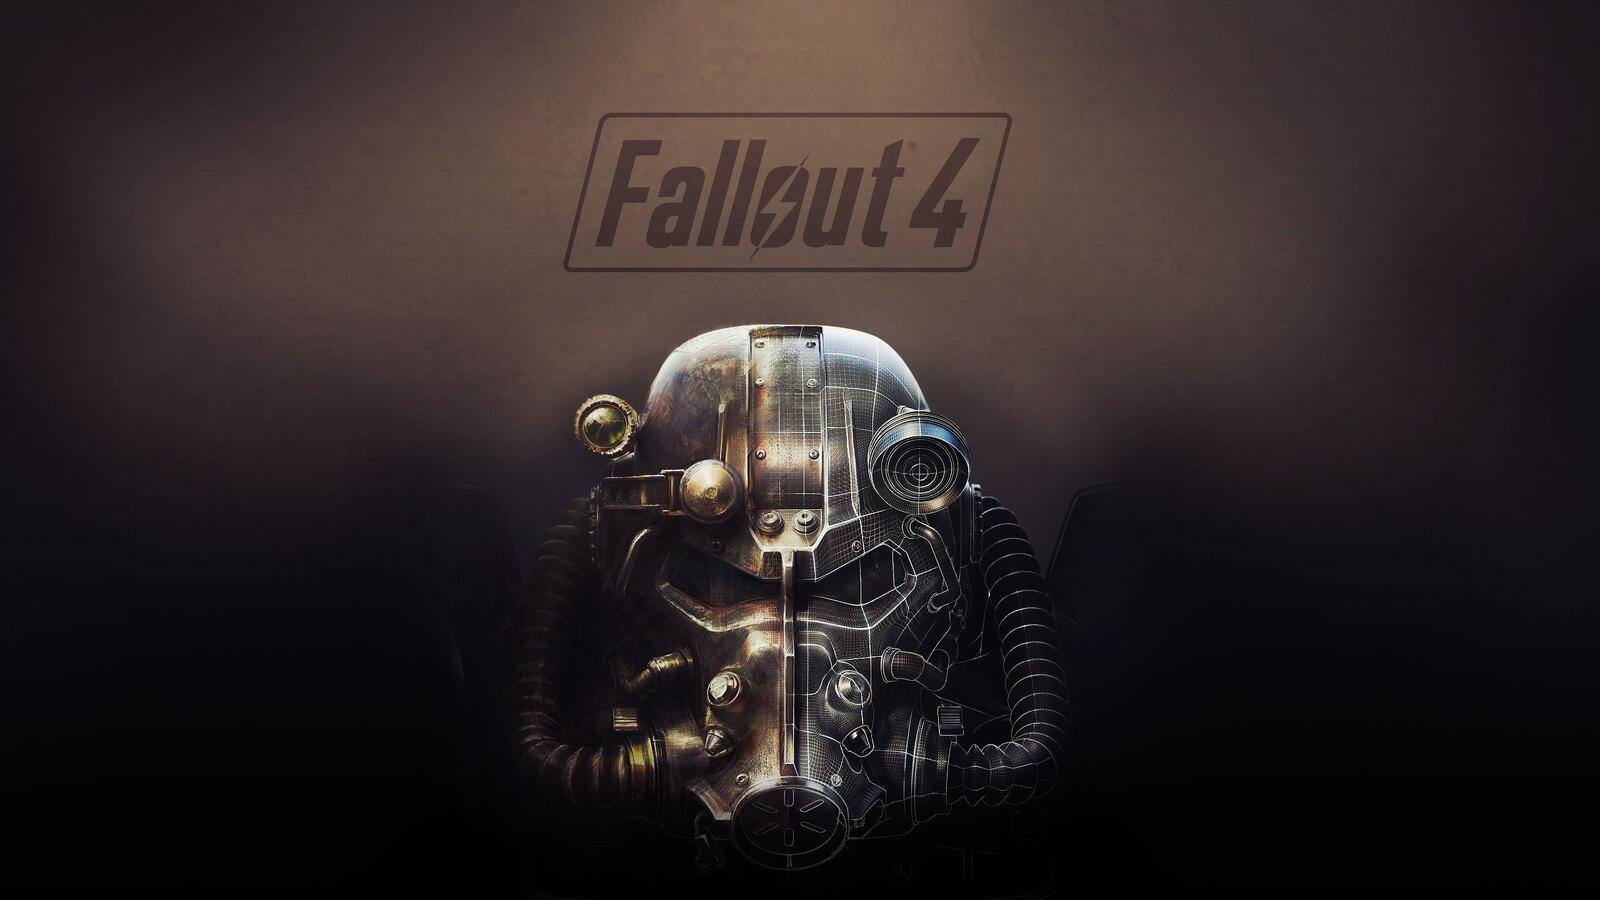 Обои металл Fallout выпадение осадков 4 на рабочий стол